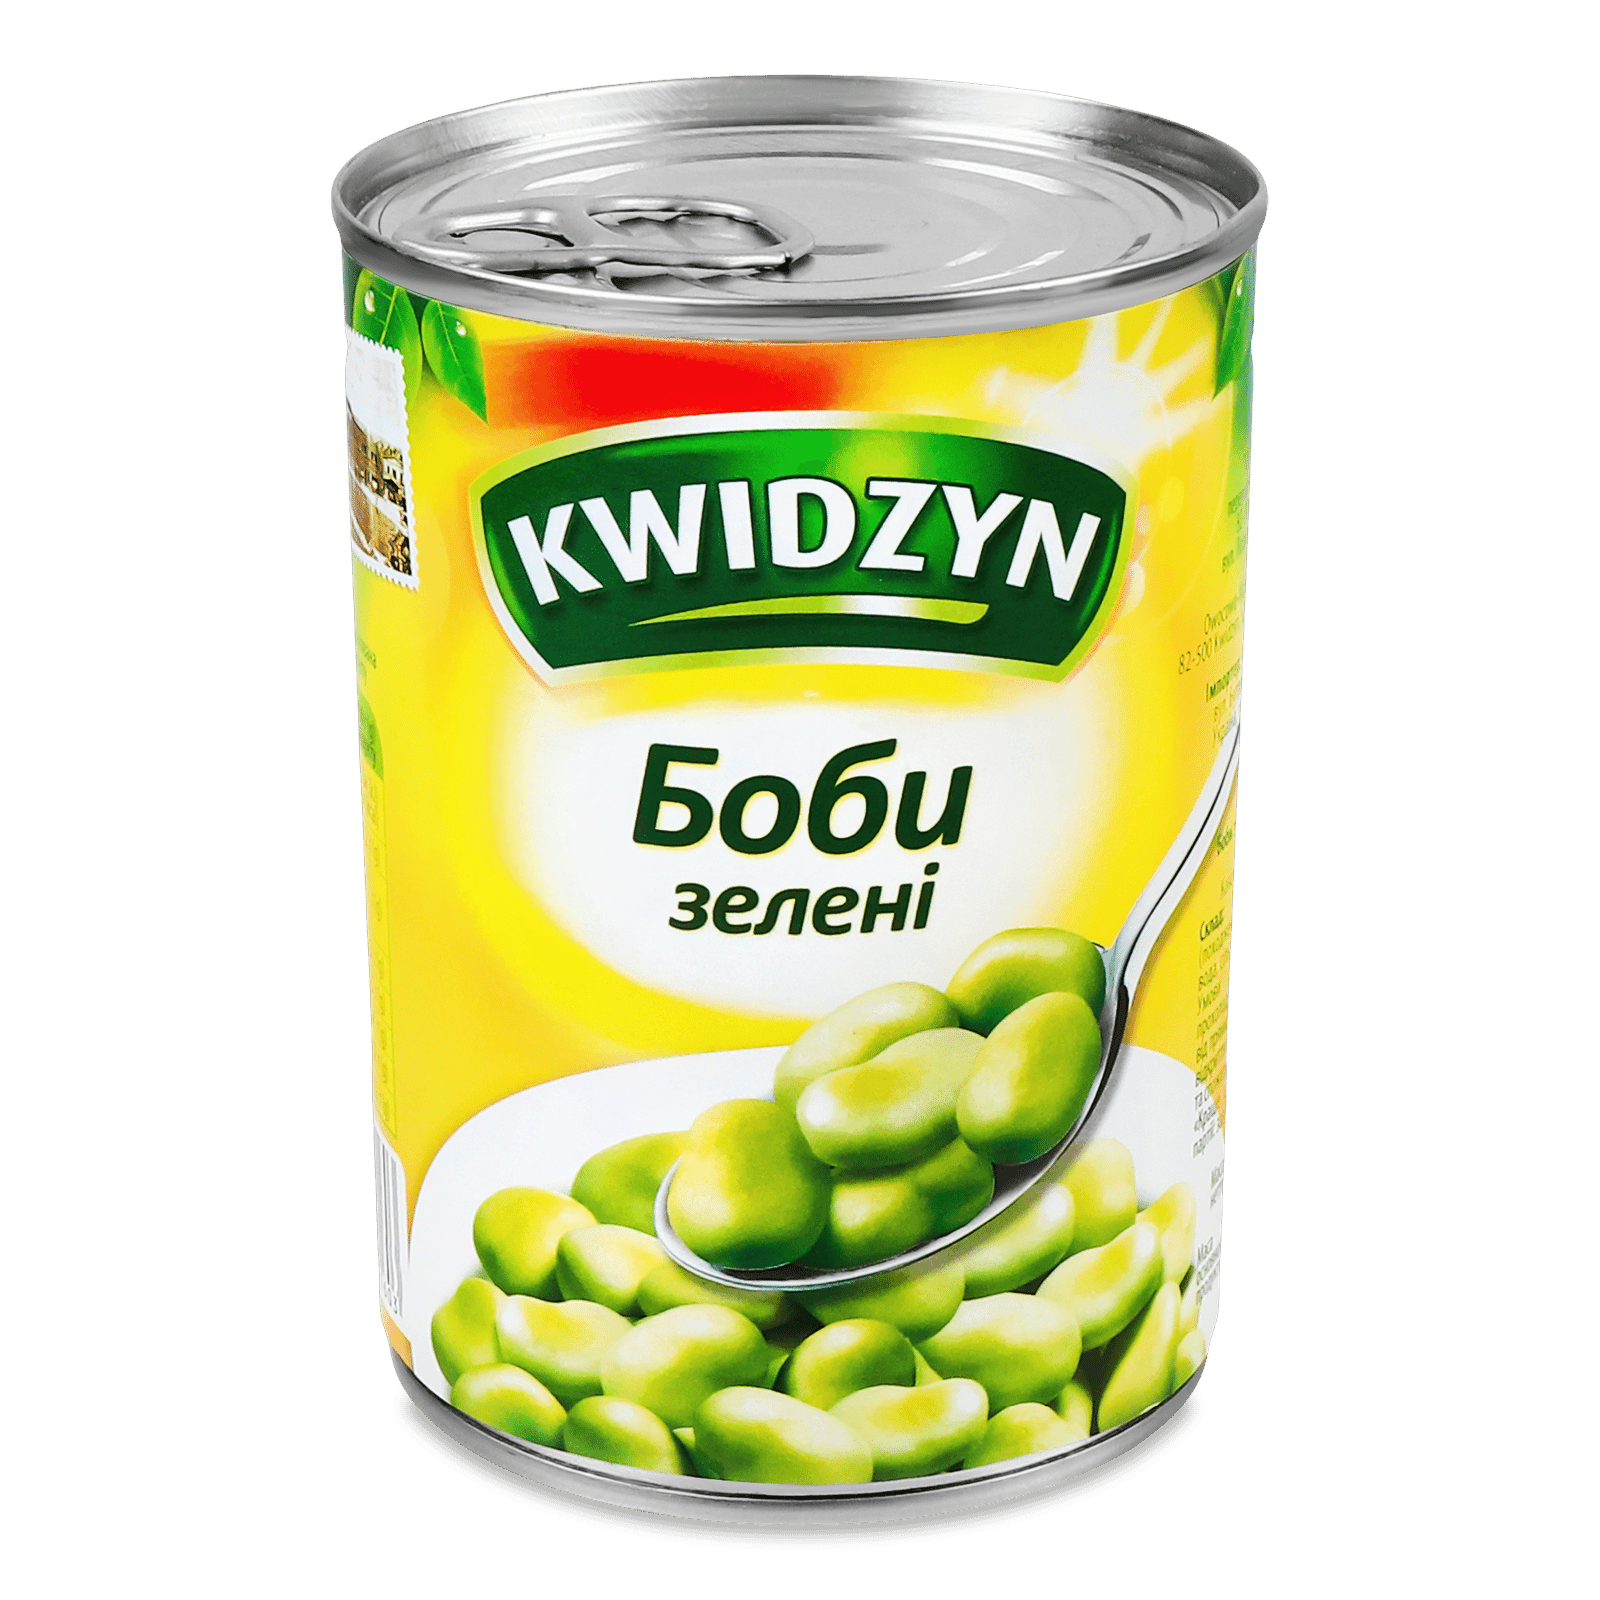 Боби Kwidzyn зелені - 1